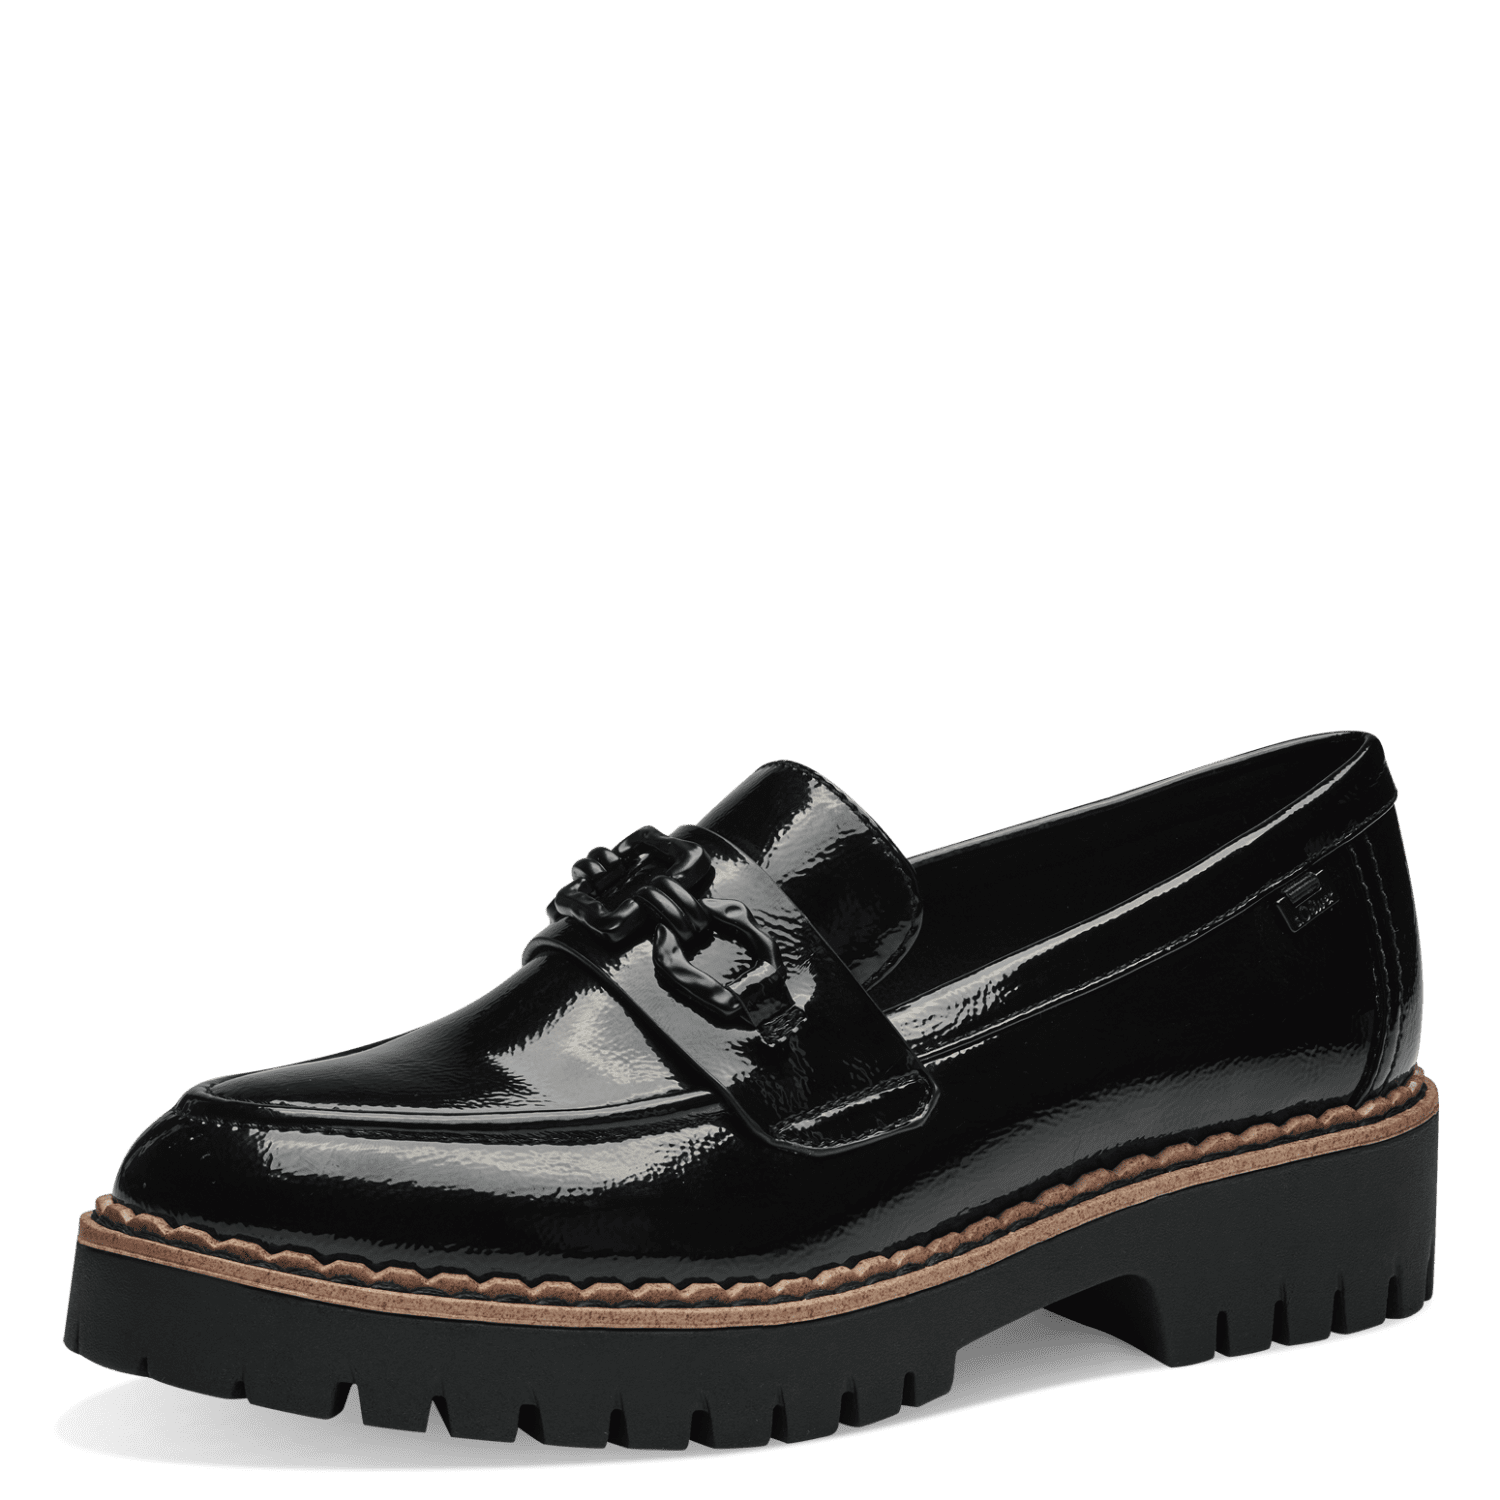 S.Oliver női cipő 5-24702-42 018 Black Patent